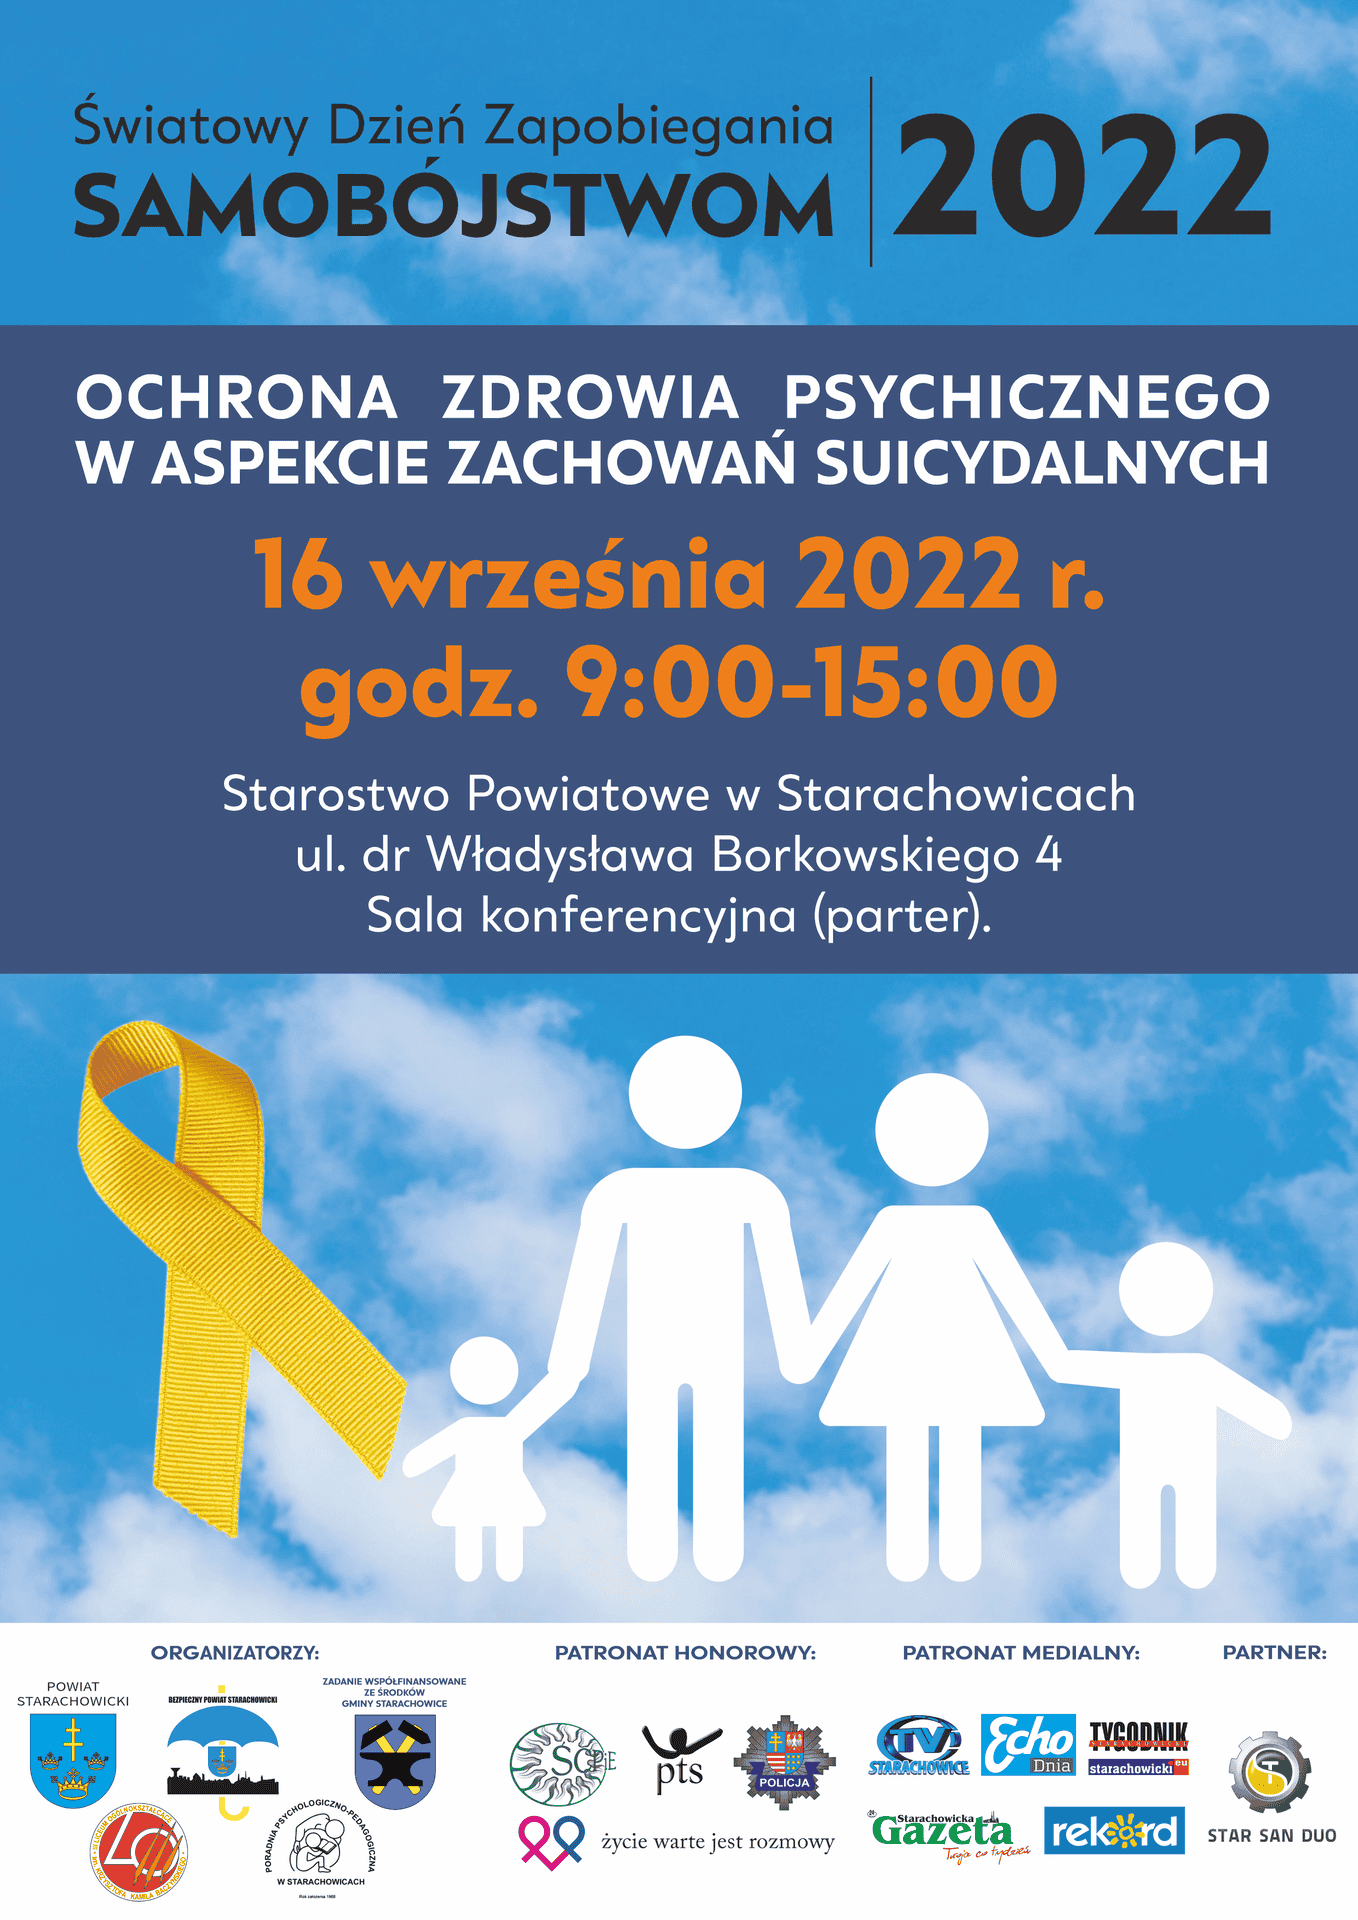 "Ochrona zdrowia psychicznego w aspekcie zachowań suicydalnych” - to tytuł konferencji, jaka odbędzie 16 września br. w Starostwie Powiatowym w Starachowicach